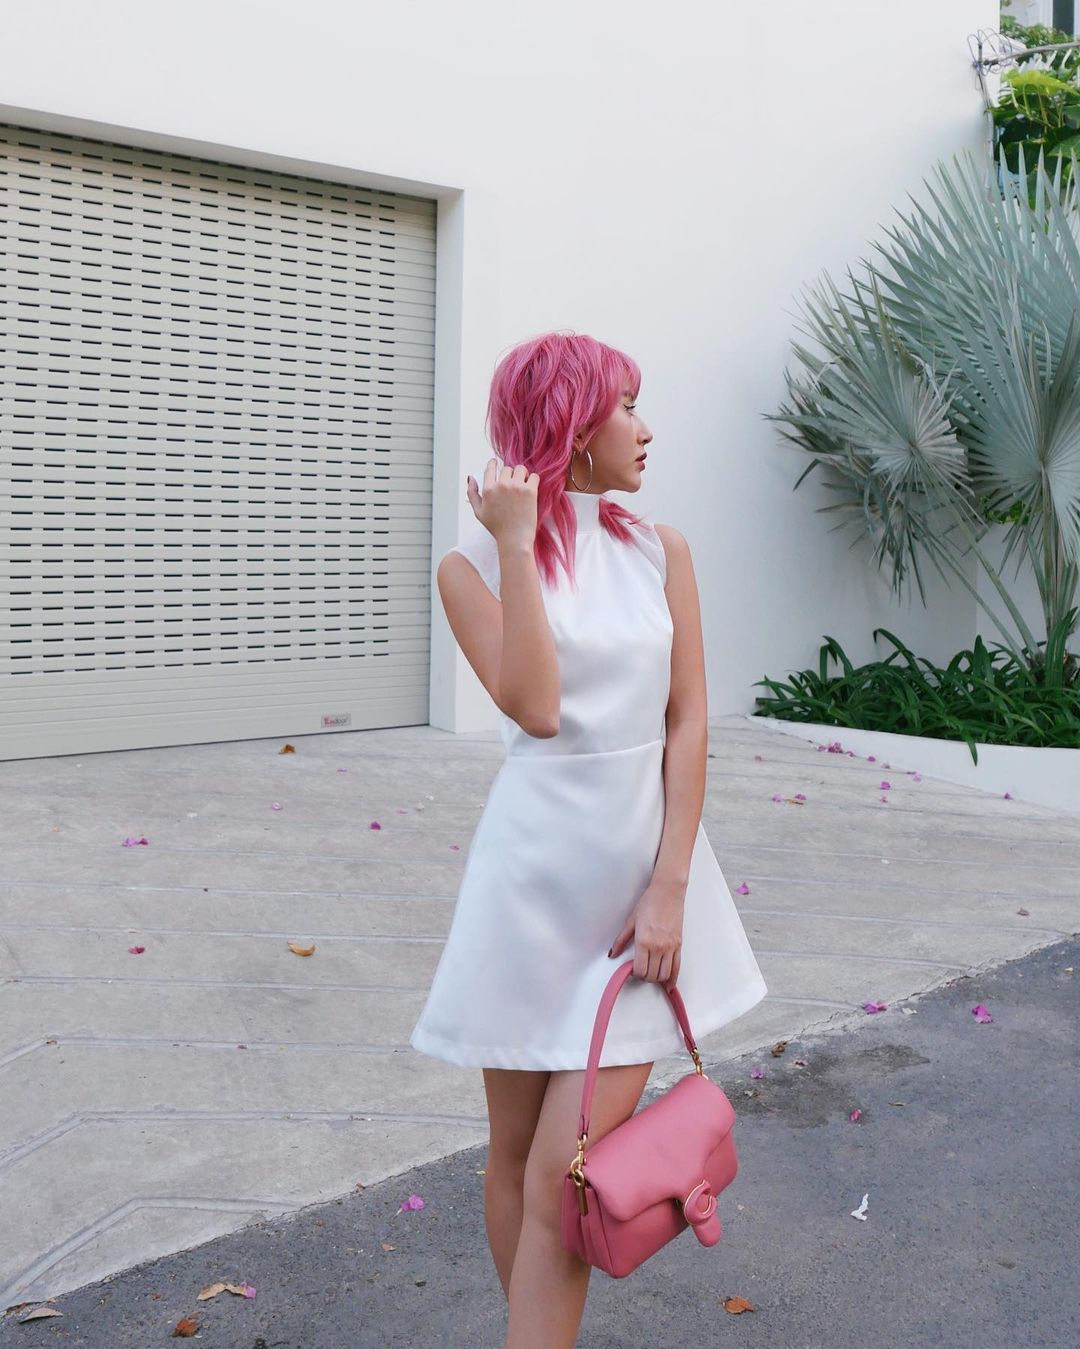 Quỳnh Anh Shyn với màu tóc hồng nổi nhất Vịnh Bắc Bộ khoe dáng xinh với chiếc váy trắng